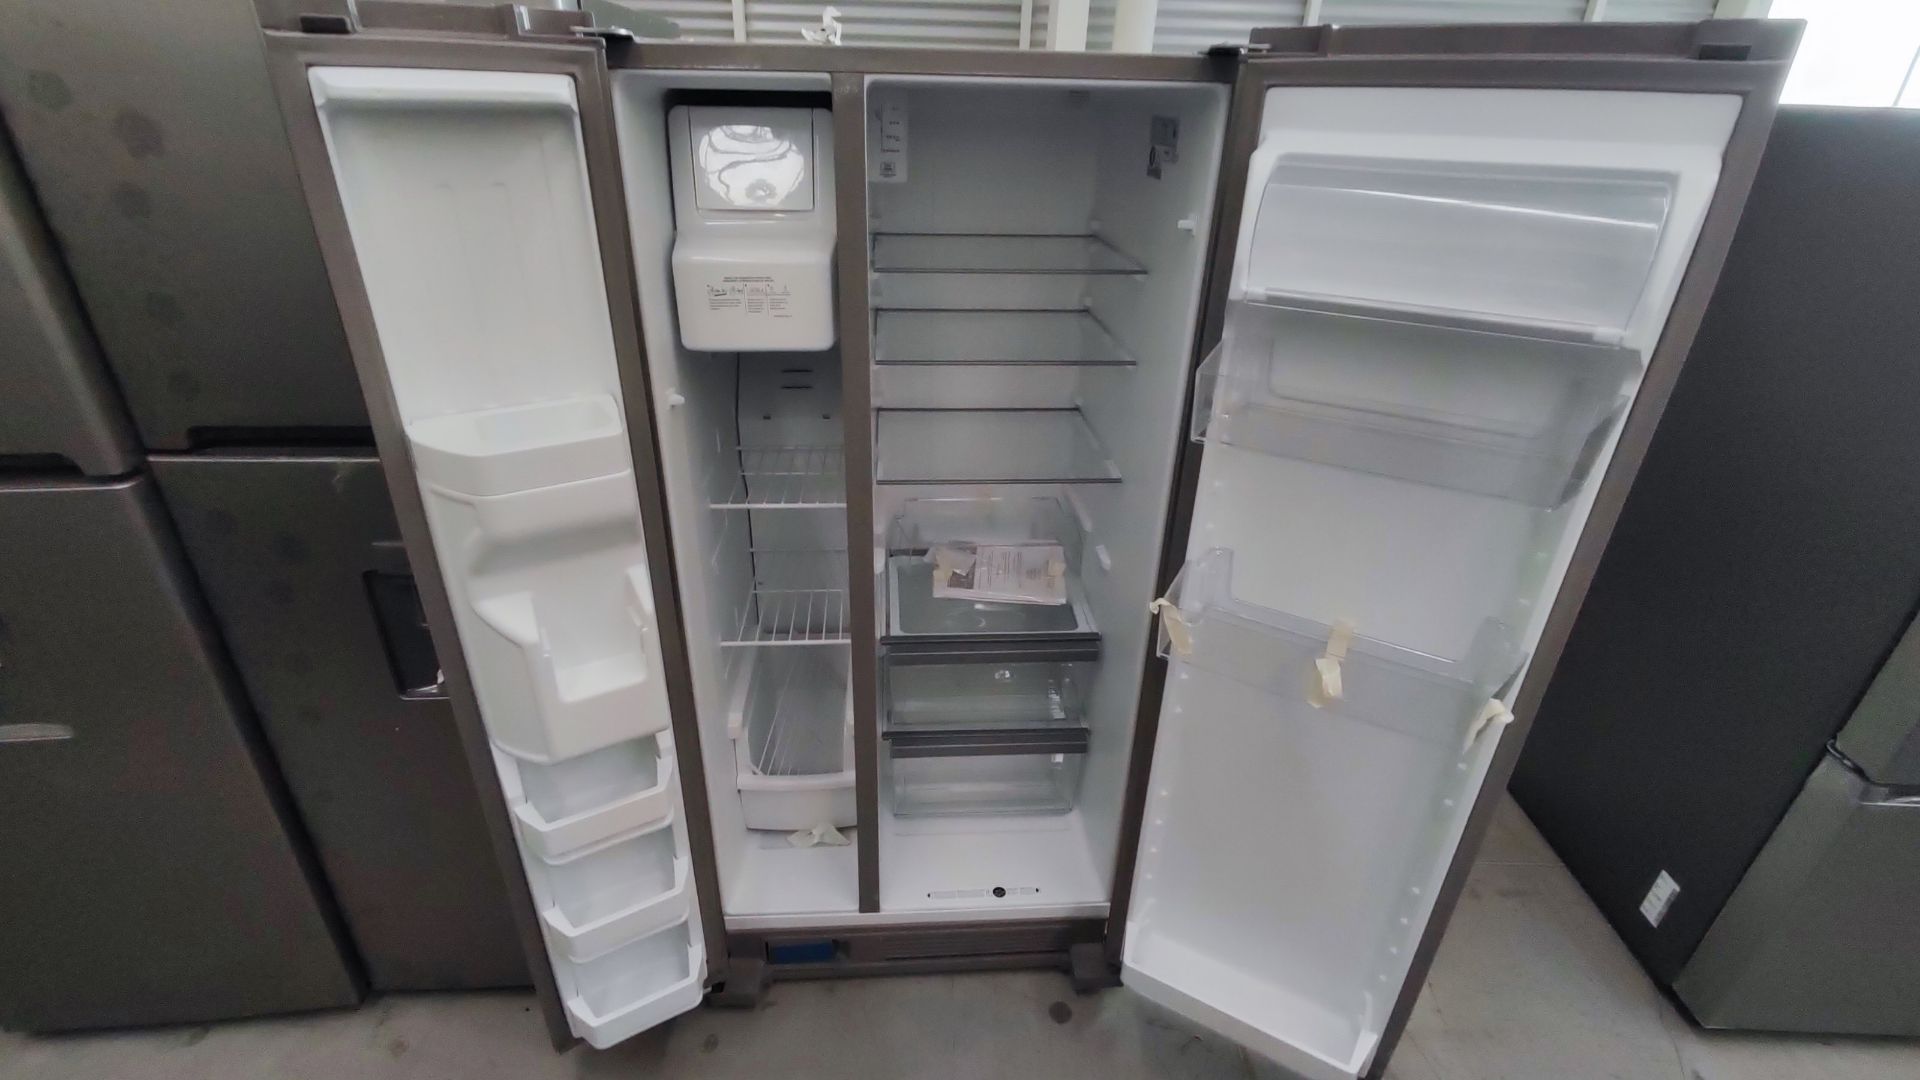 Lote Conformado por 2 Refrigeradores, Contiene; 1 Refrigerador con Dispensador de Agua Marca Whirlp - Image 8 of 13